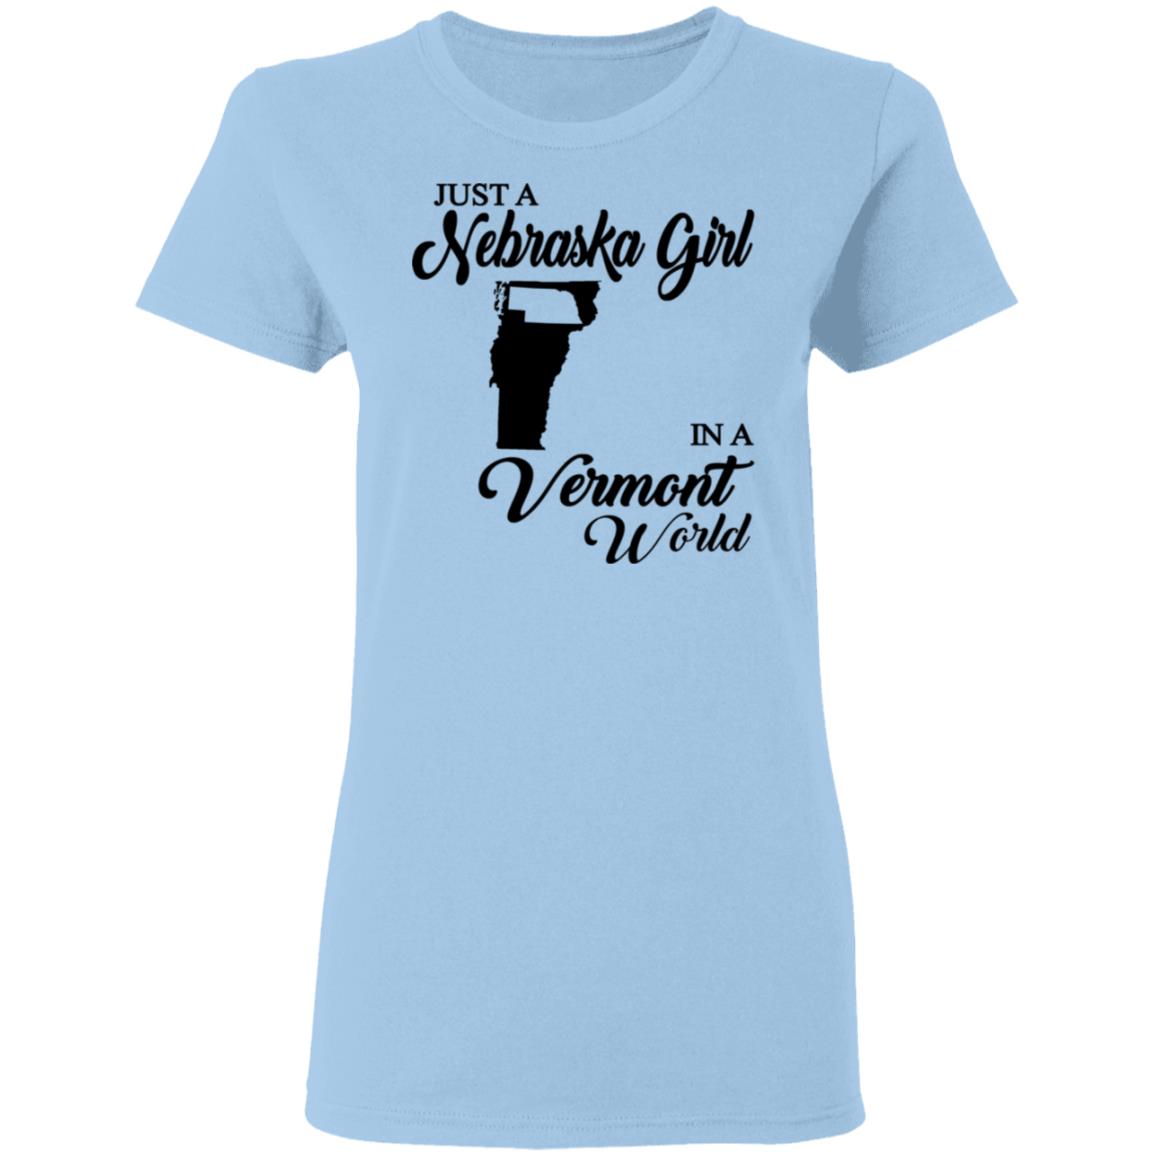 Just A Nebraska Girl In A Vermont World T-Shirt - T-shirt Teezalo